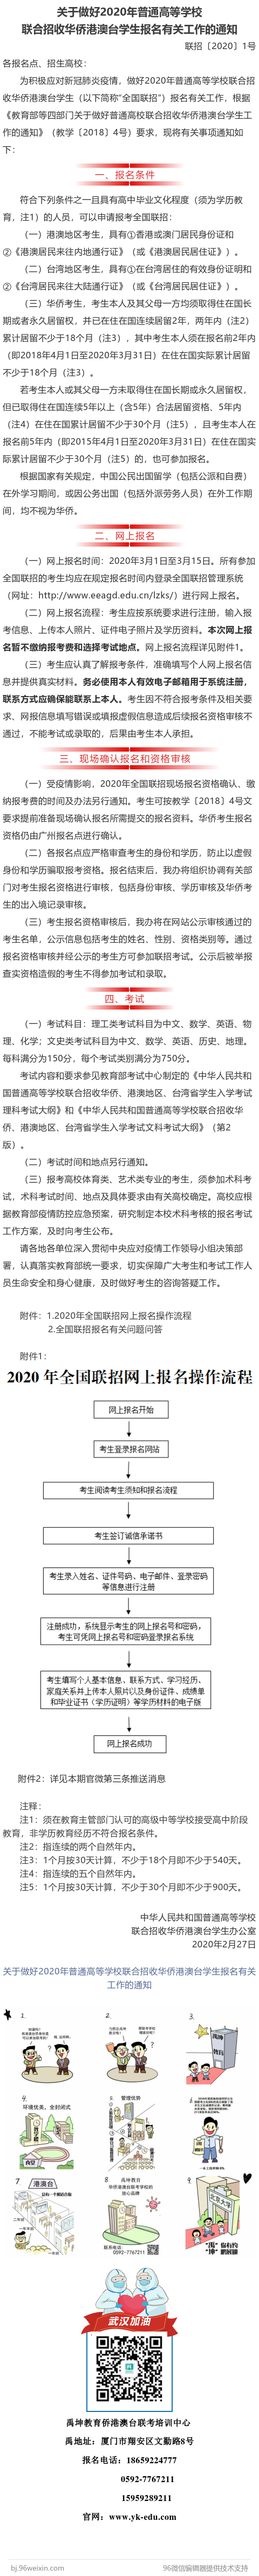 关于做好2020年普通高等学校联合招收华侨港澳台学生报名有关工作的通知.png